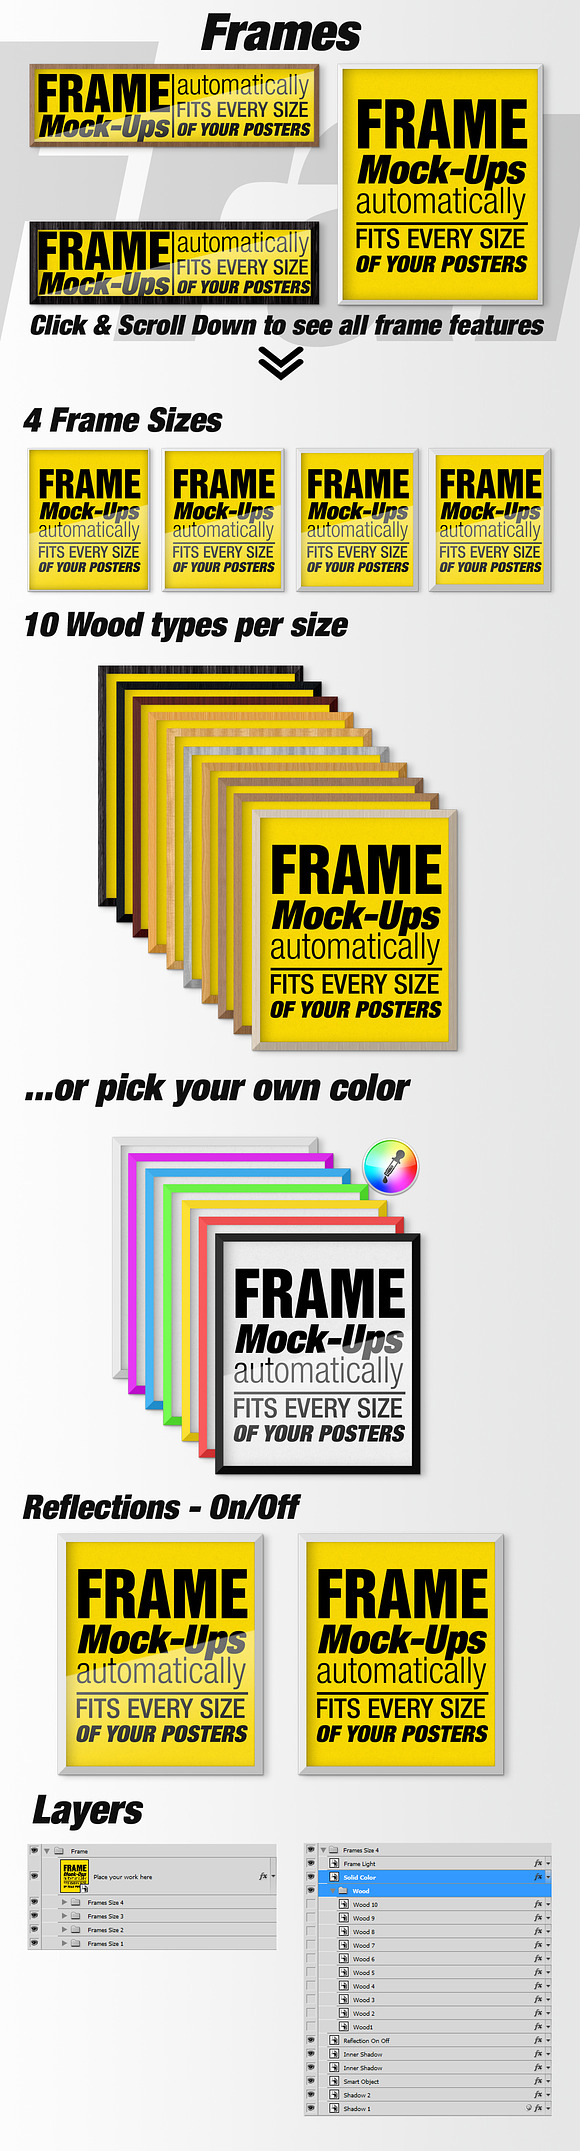 Canvas Mockups - Frames Mockups v 53 in Print Mockups - product preview 6